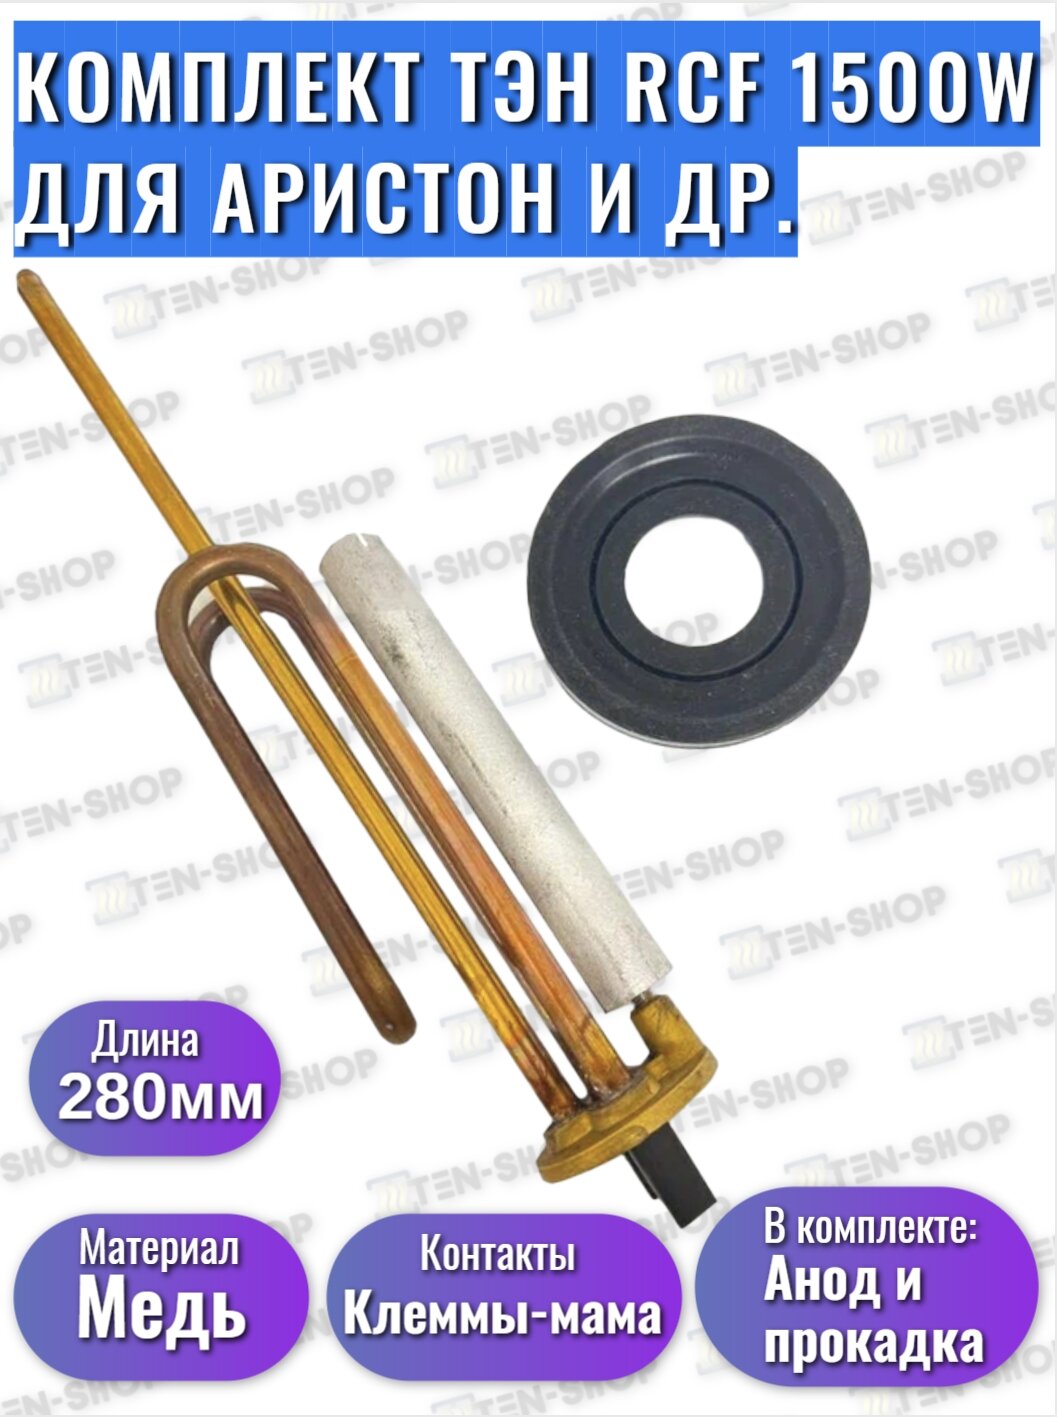 Комплект Ariston ТЭН RCF 1500W + Магниевый анод + Прокладка для Ariston